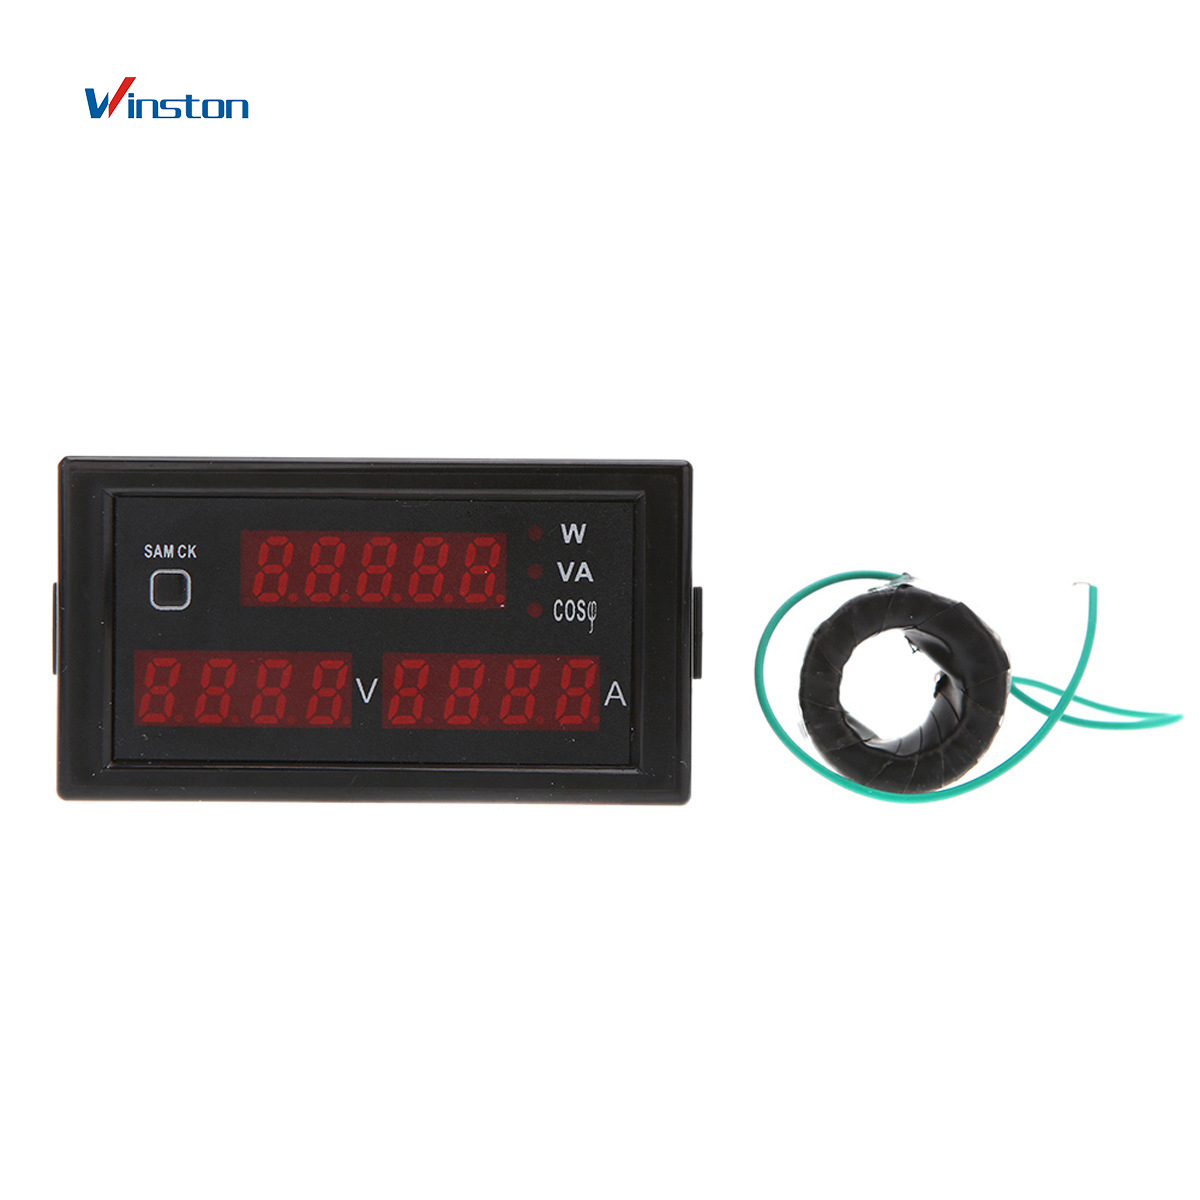 D69-2048 AC 80-300V 0-100A Multi-Function Digital Display AC Voltmeter Ammeter Frequency Meter Power Meter